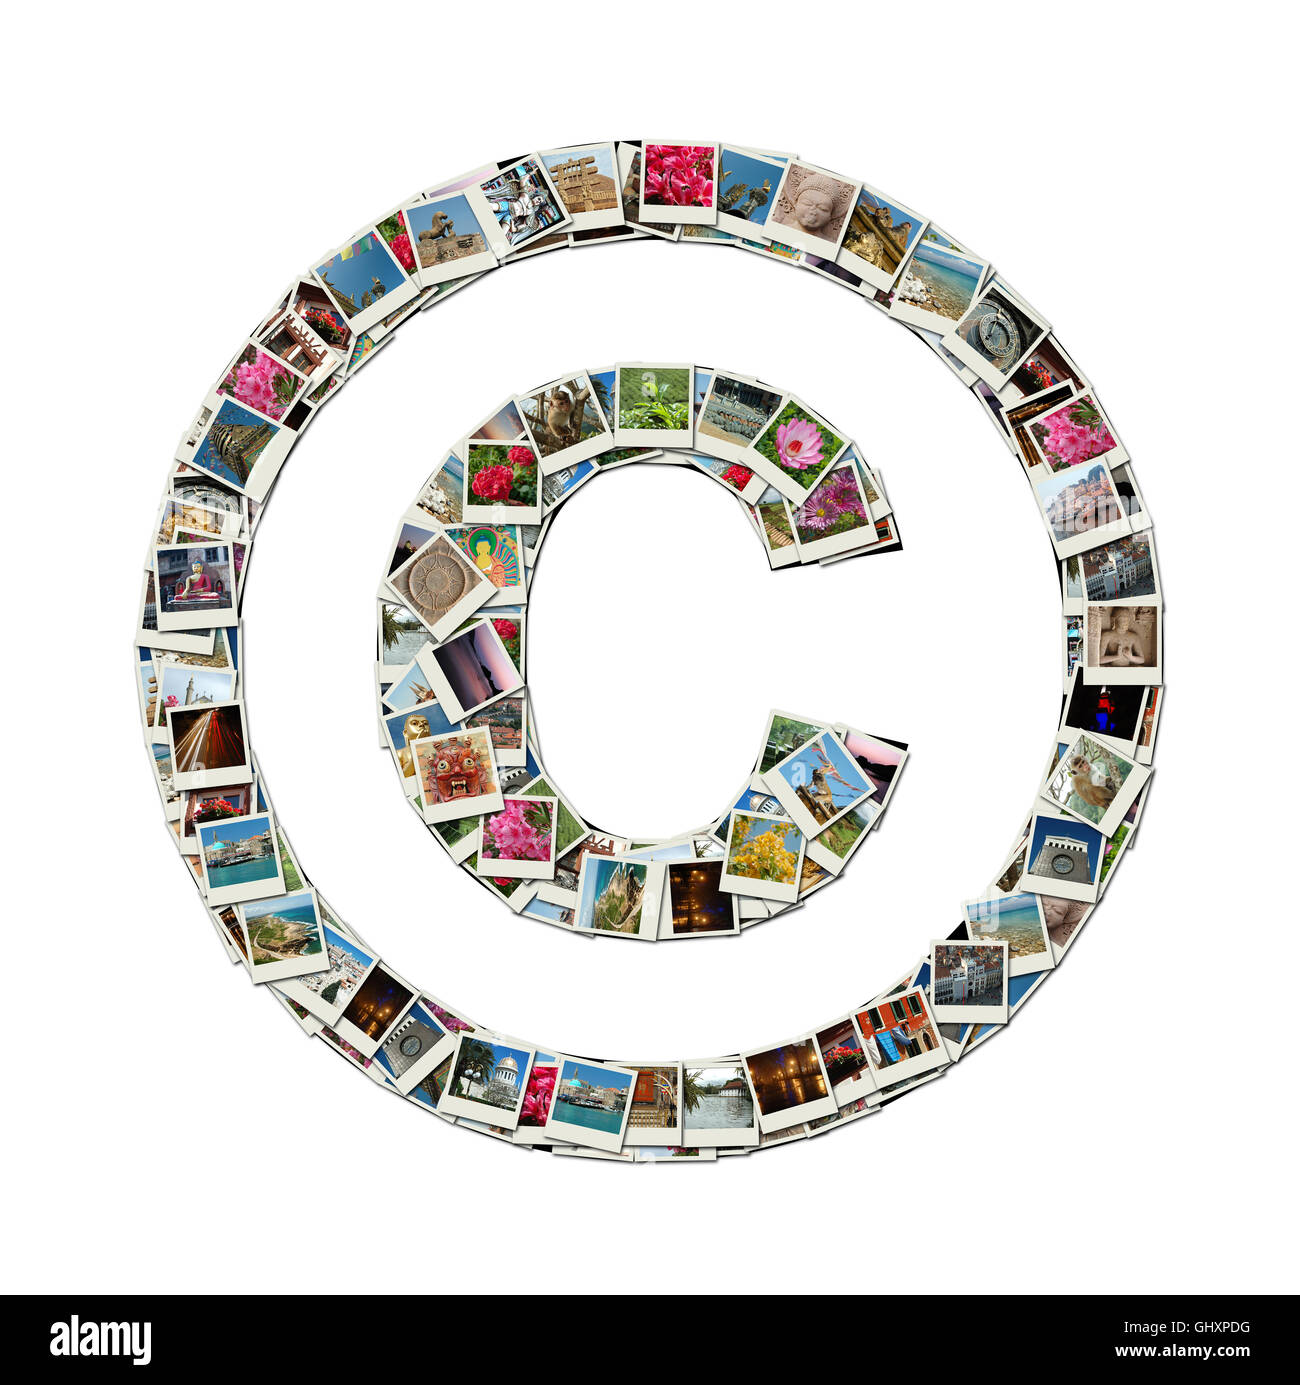 Signo de Copyright - Ilustración conceptual como el collage de fotos de viajes Foto de stock